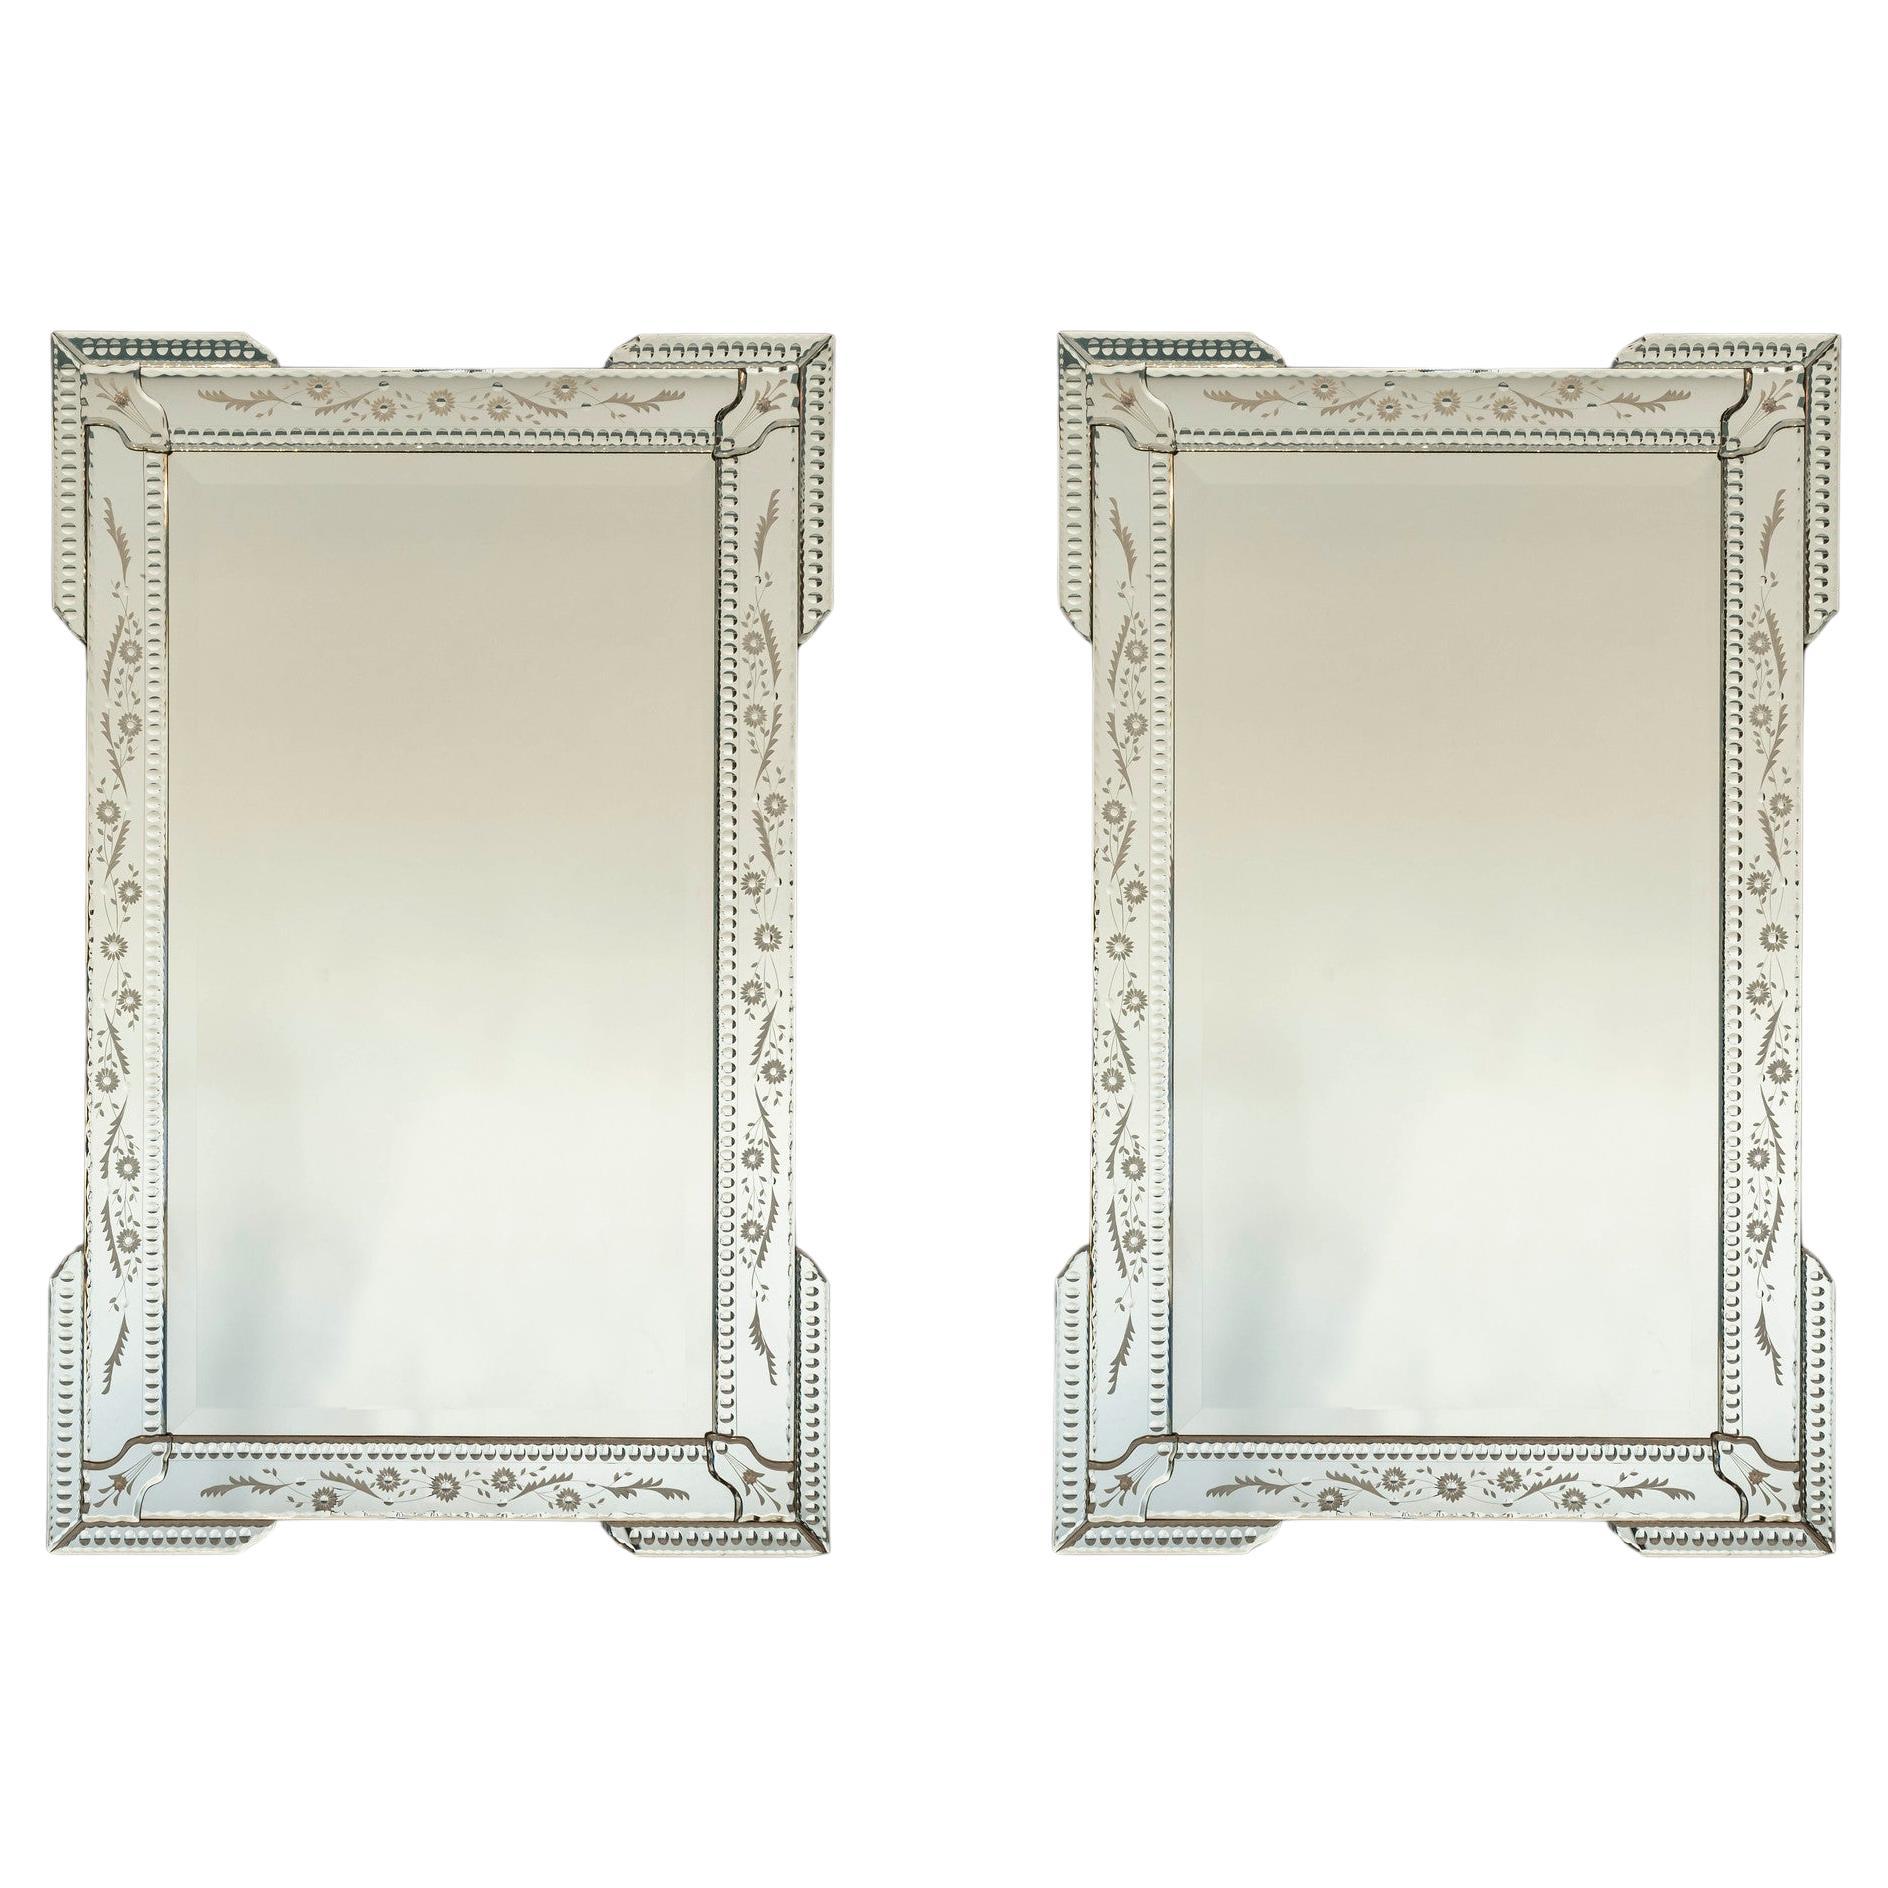 Pair Vintage Venetian Style Mirrors